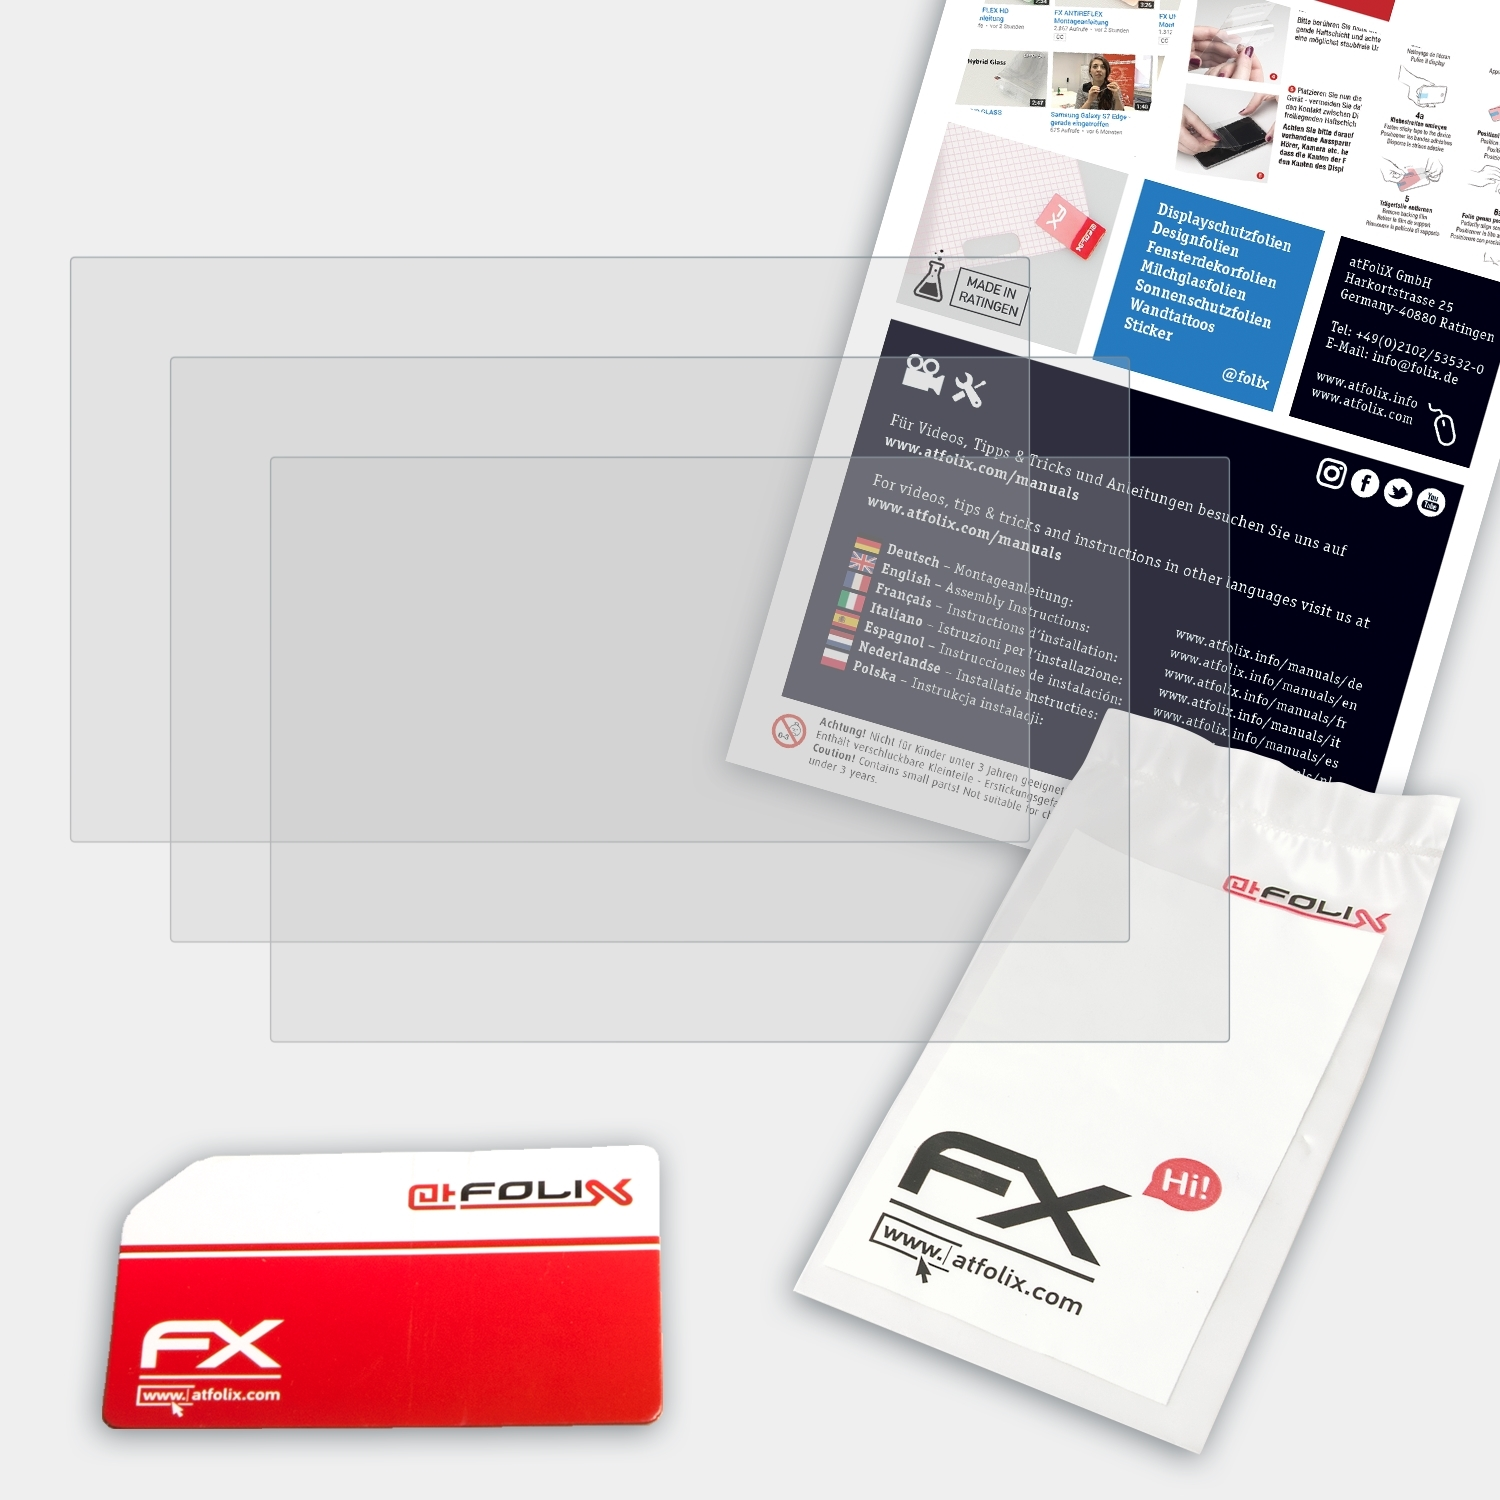 ATFOLIX 3x FX-Antireflex Plus (9 Displayschutz(für Garmin GPSMap 922xs Inch))